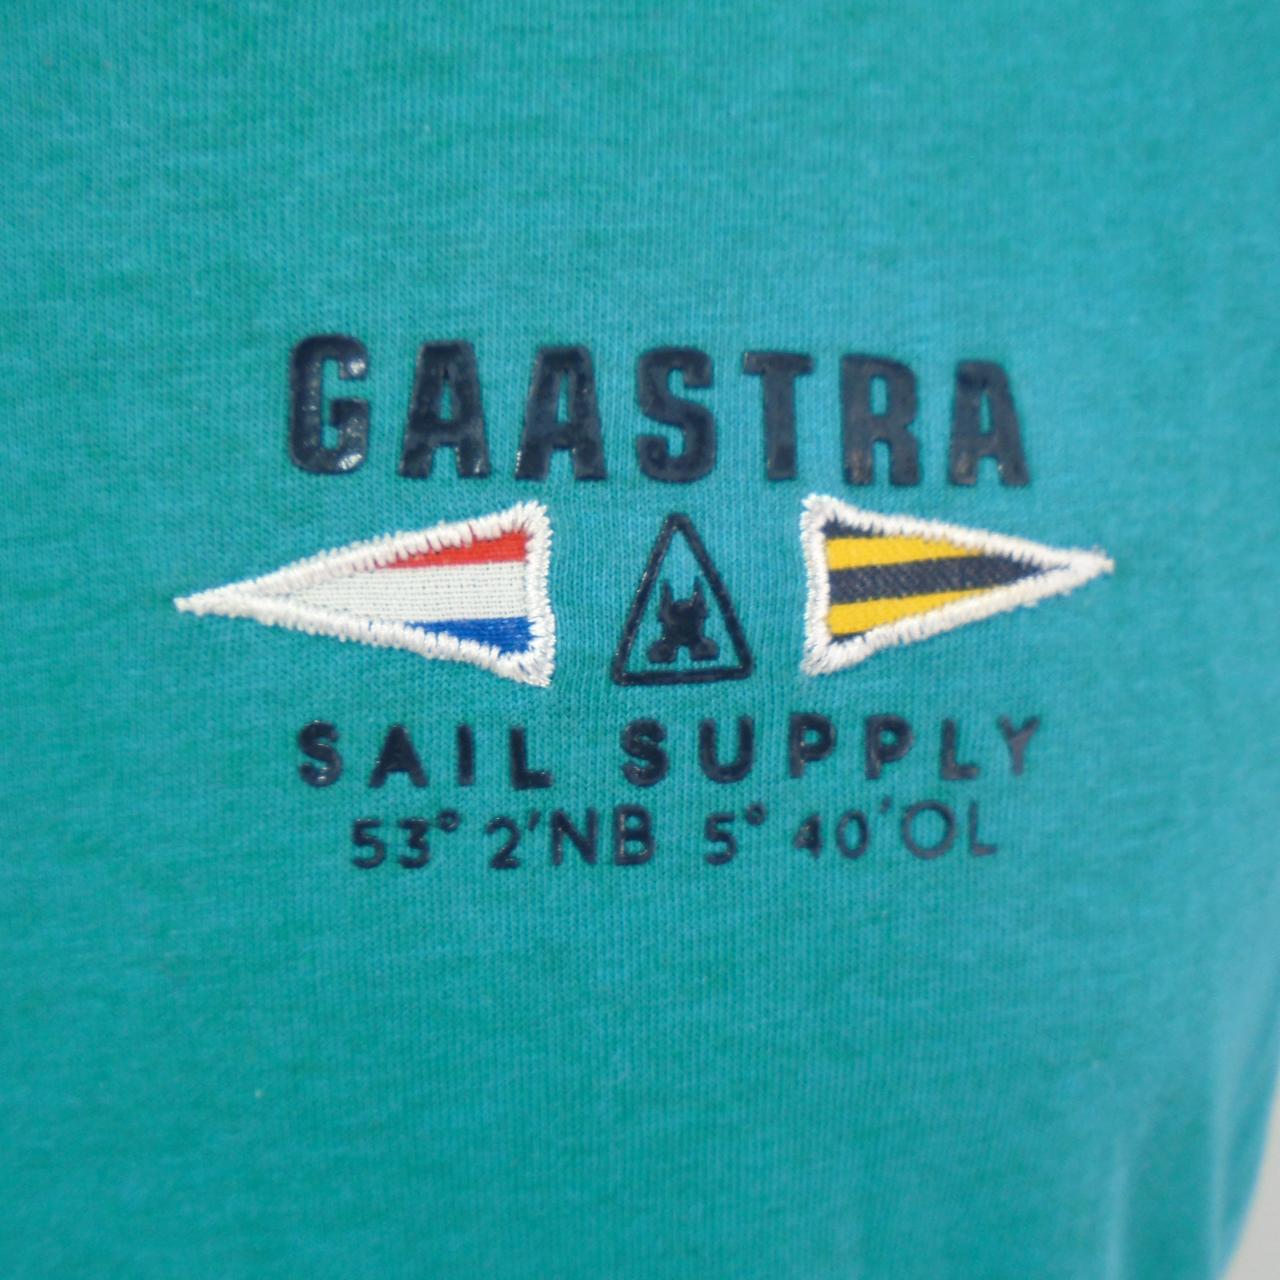 Herren T-Shirt Gaastra.  Grün.  L. gebraucht.  Gut